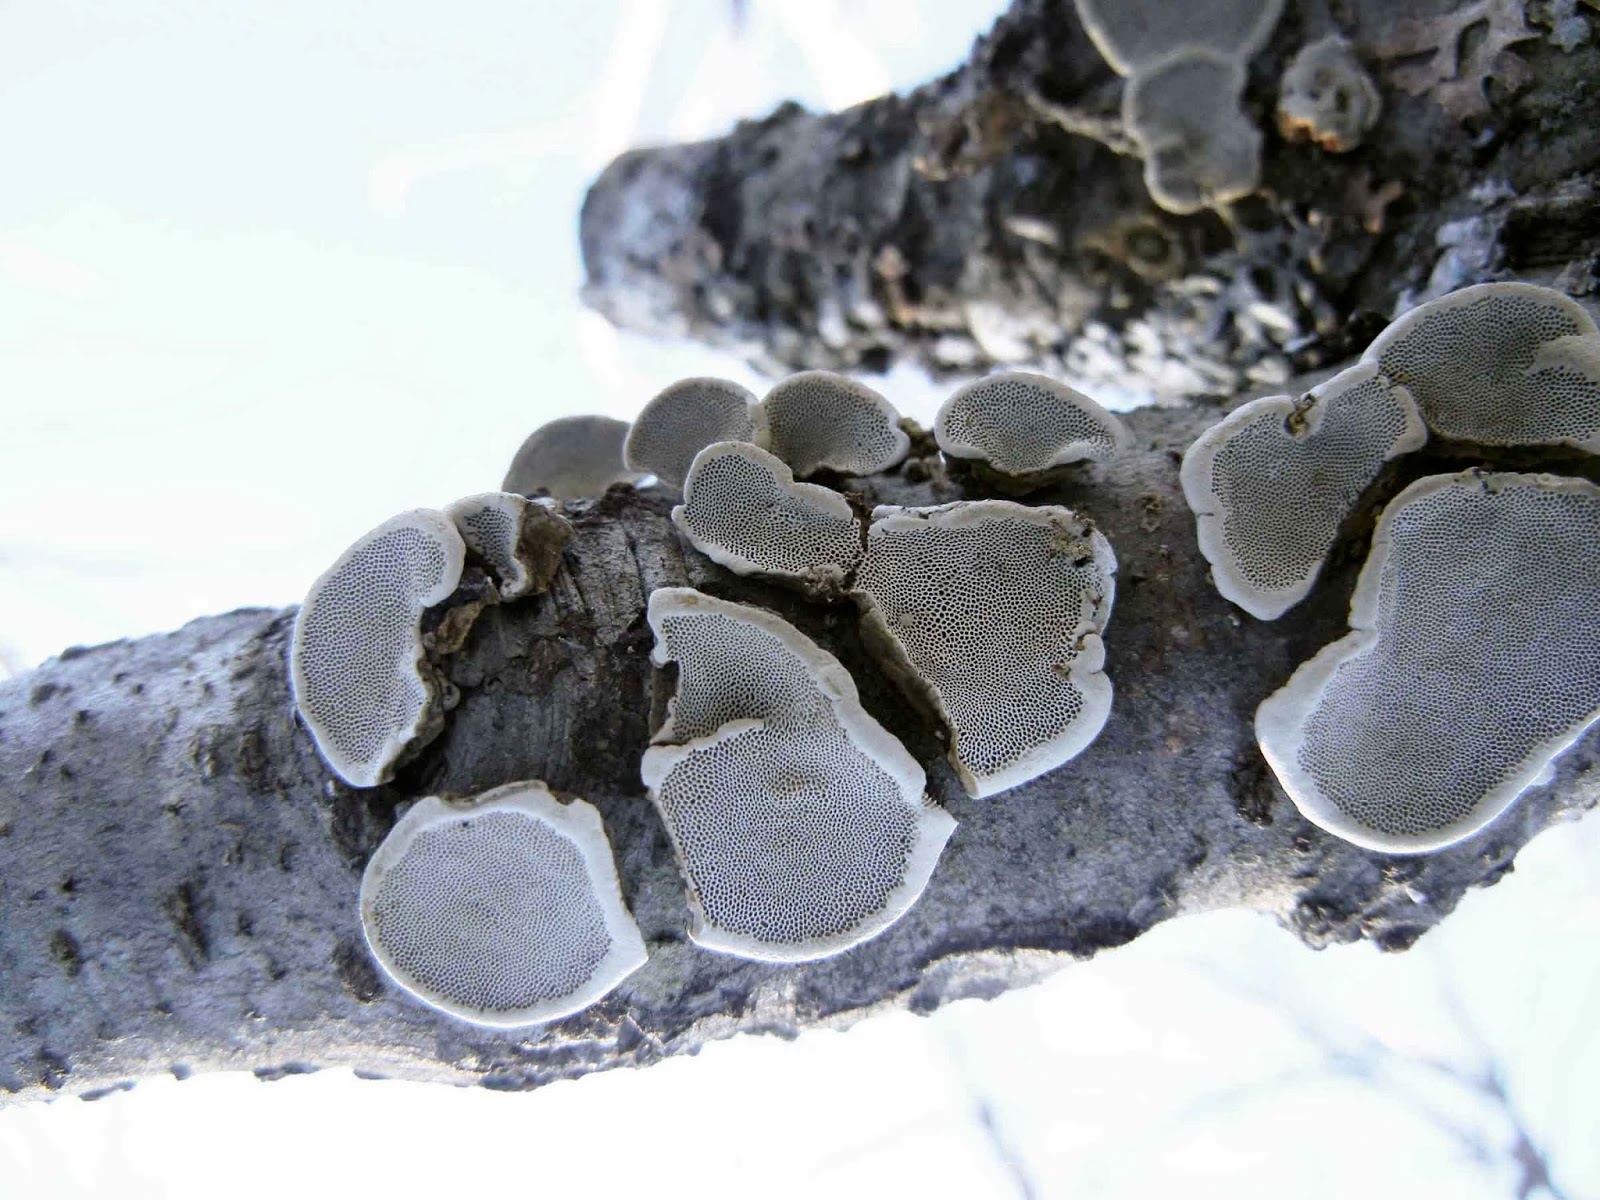 Pore surface of Datroniella scutellata